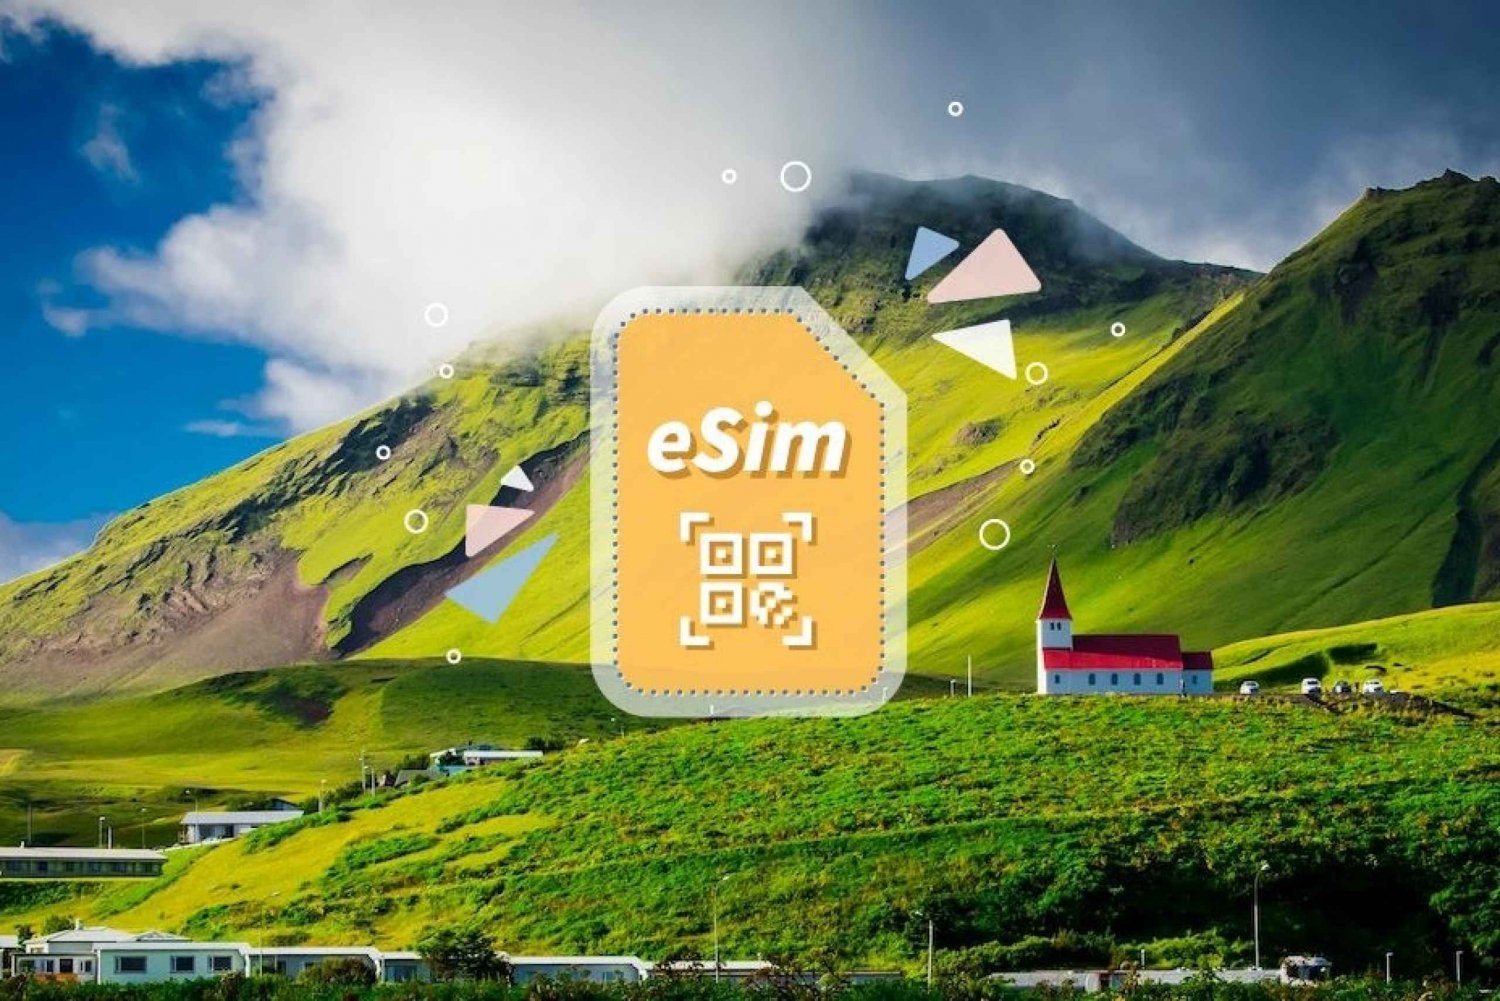 Iceland/Europe: eSim Mobile Data Plan